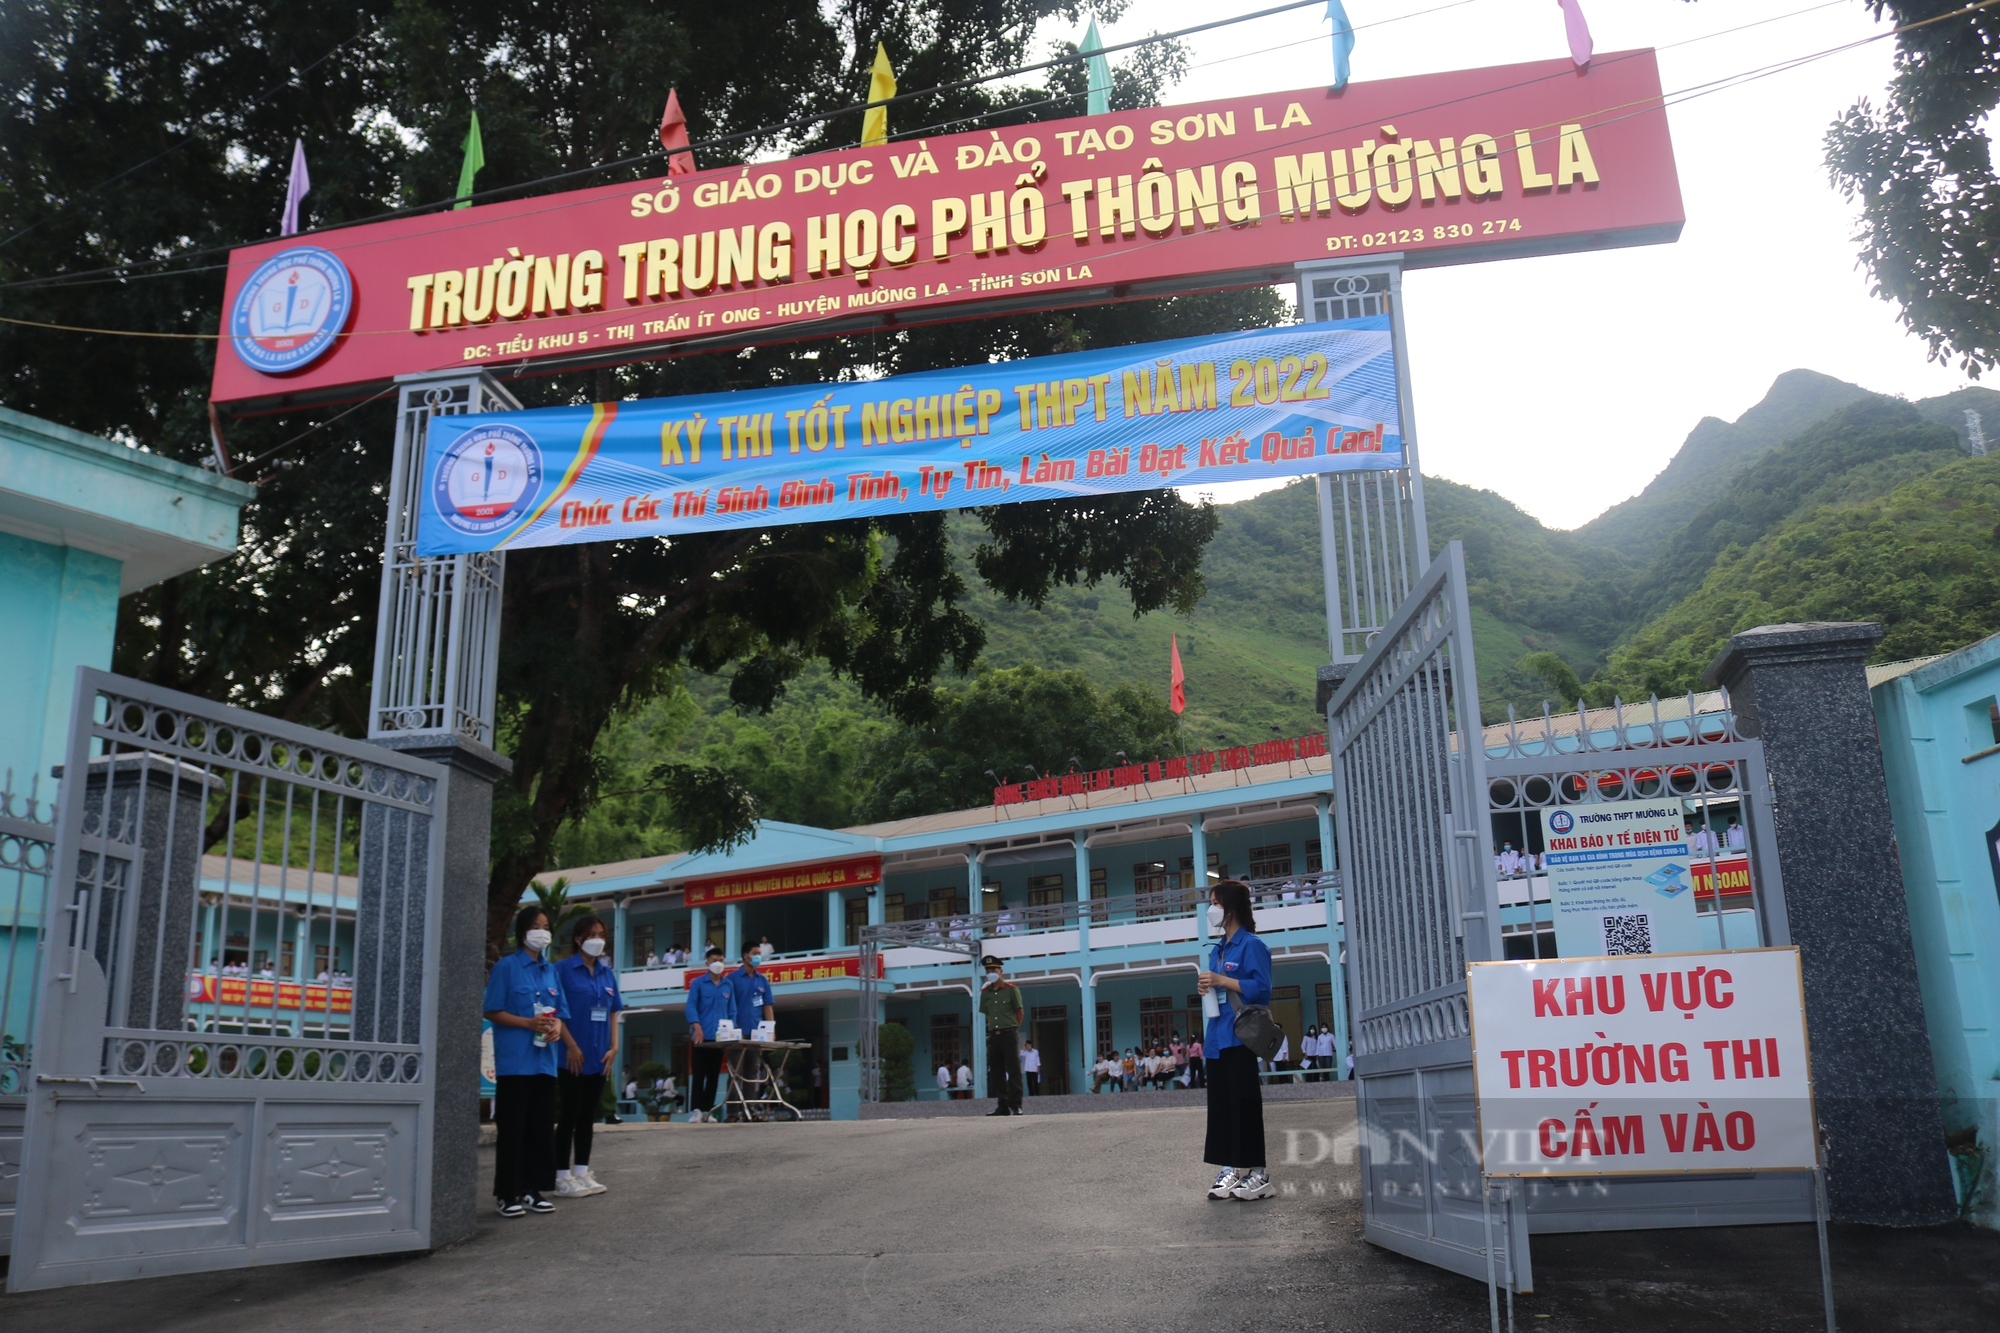 Sơn La: Thí sinh dân tộc Mông vượt hơn 200km để đến điểm thi tốt nghiệp THPT năm 2022 - Ảnh 3.